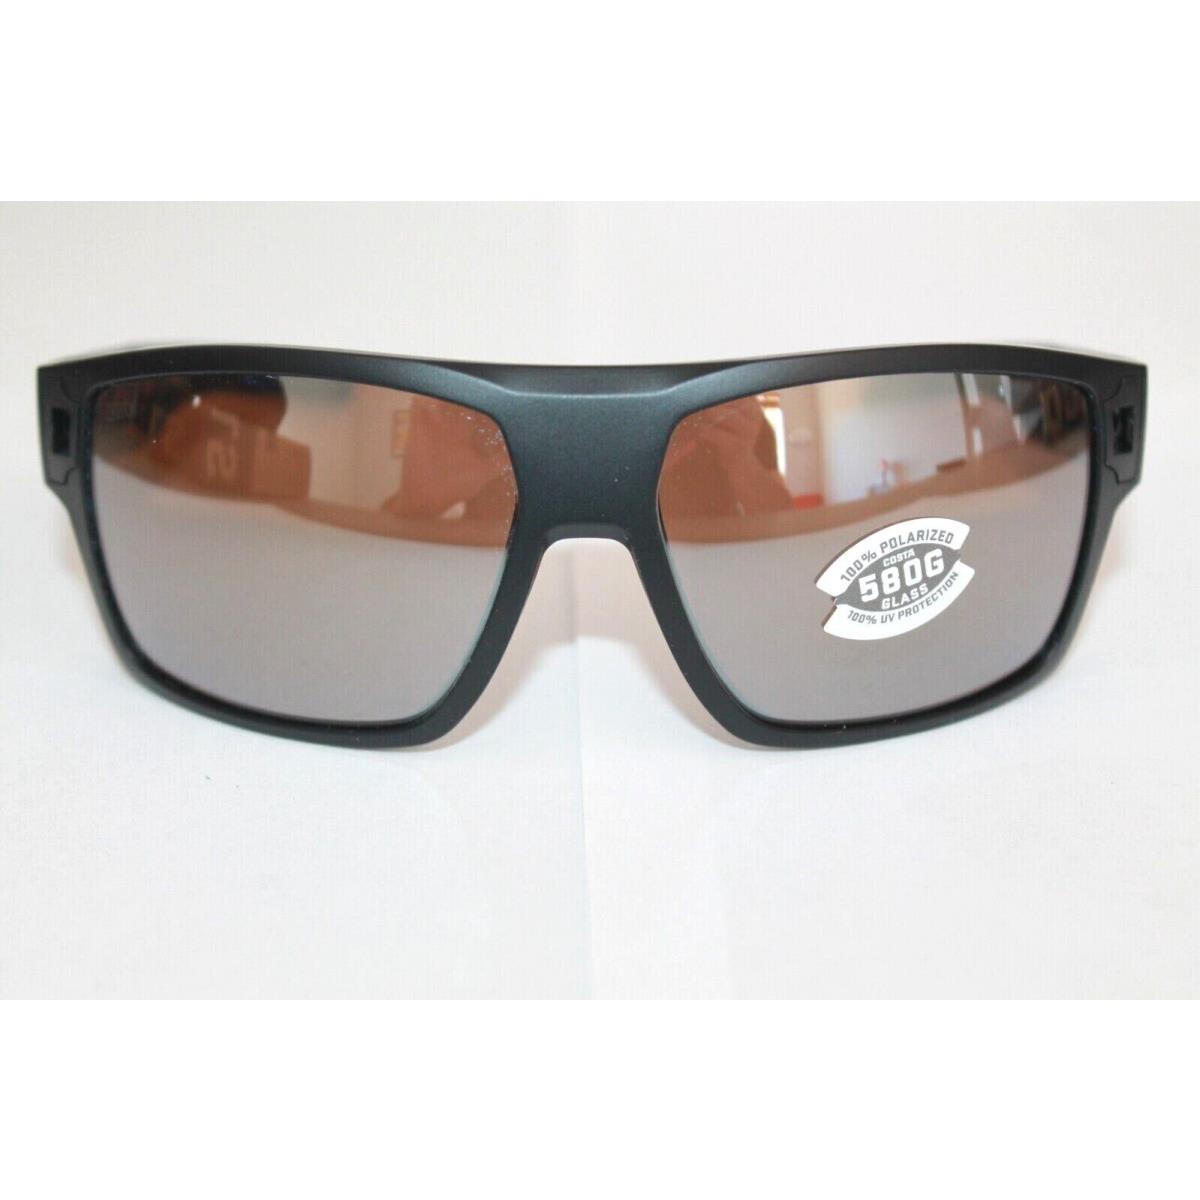 Costa Del Mar sunglasses Diego - Matte Black Frame, Copper Silver Mirror POLARIZED Lens